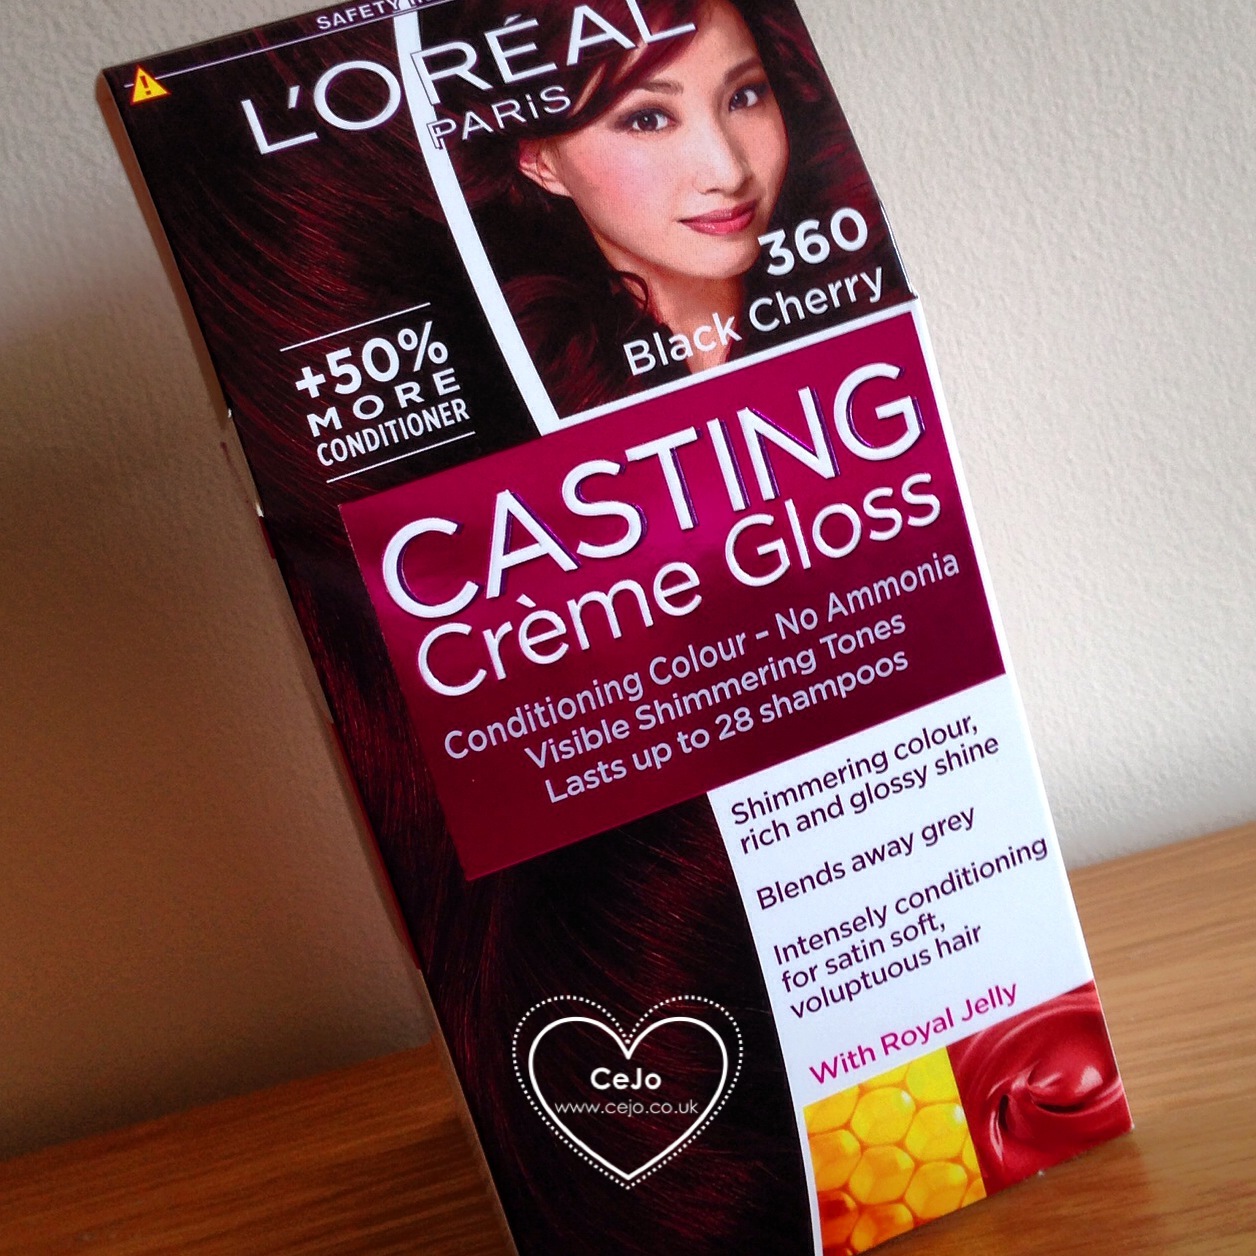 40 HQ Photos Black Cherry Hair Dye Casting Creme Gloss / Loreal Paris Casting Creme Gloss 360 Black Cherry - Hair ...